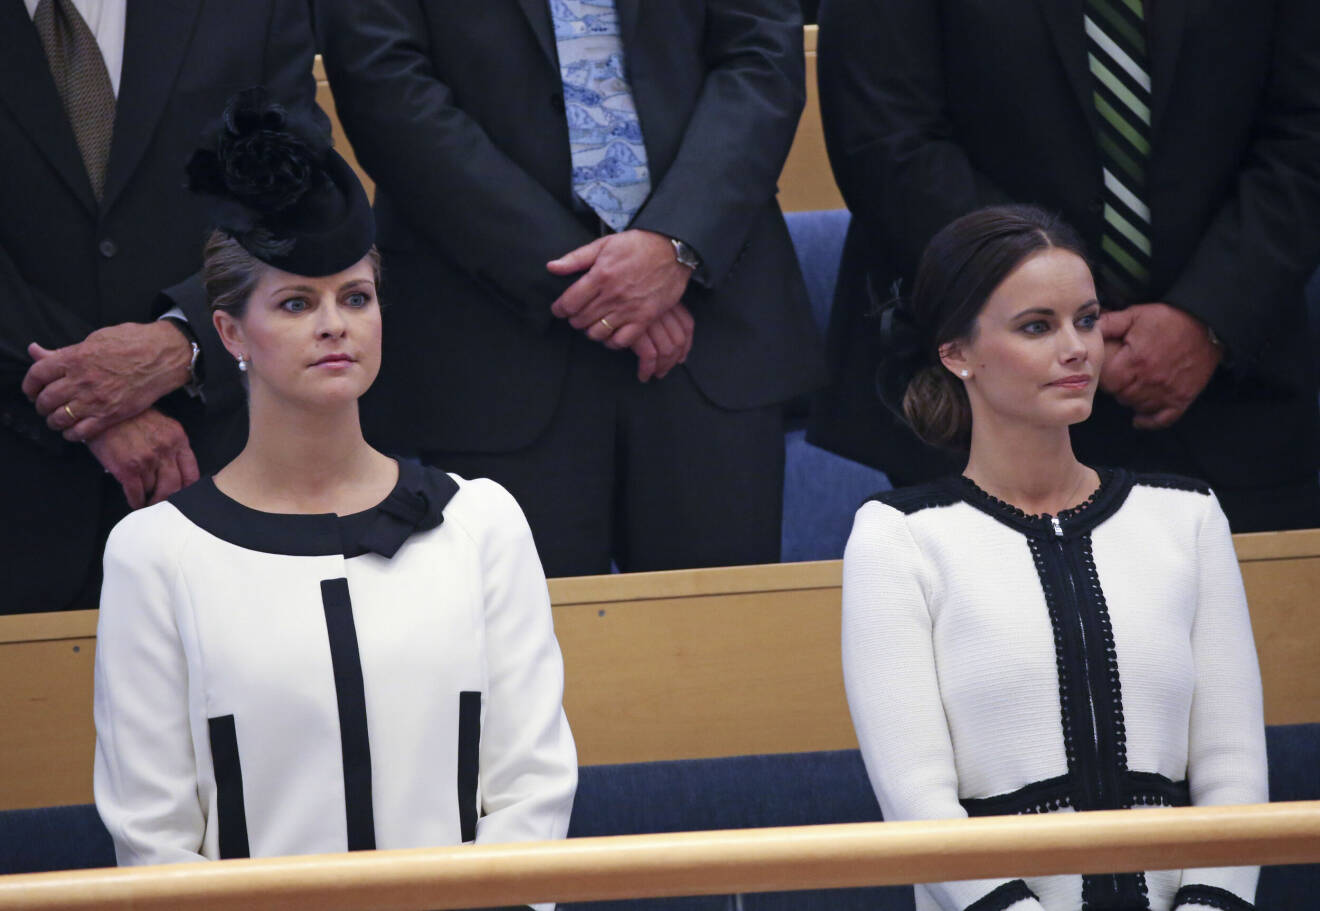 Prinsessan Madeleine och prinsessan Sofia vid riksmötets öppnande år 2015. Bara någon månad efter att Sofia mottagit sin prinsesstitel.